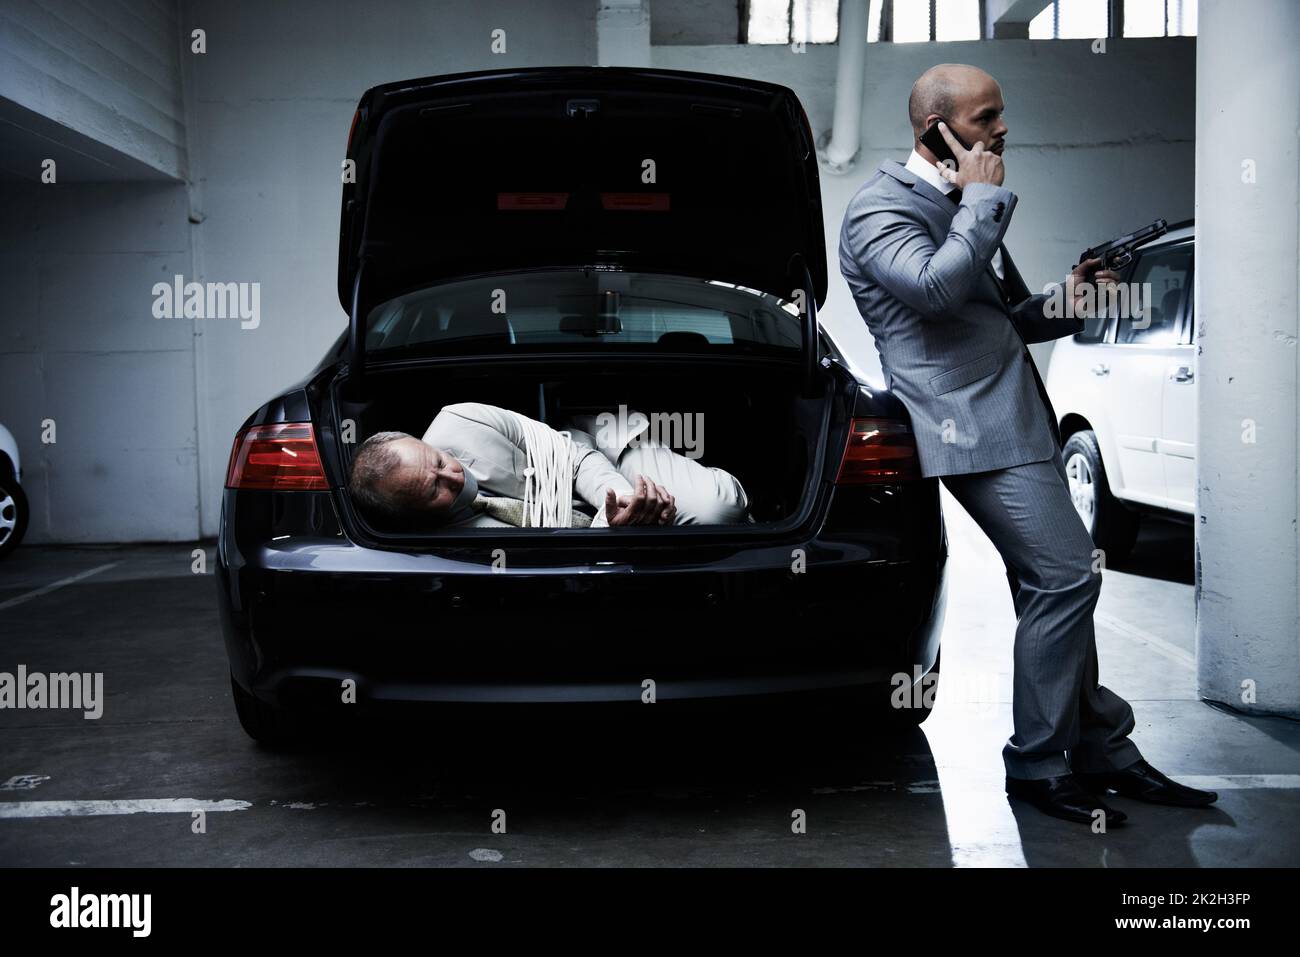 Geisel für den Mob. Ein verängstigter Geschäftsmann liegt im Kofferraum eines Autos, während sein bewaffneter Kopfgeldjäger auf einem Handy spricht. Stockfoto